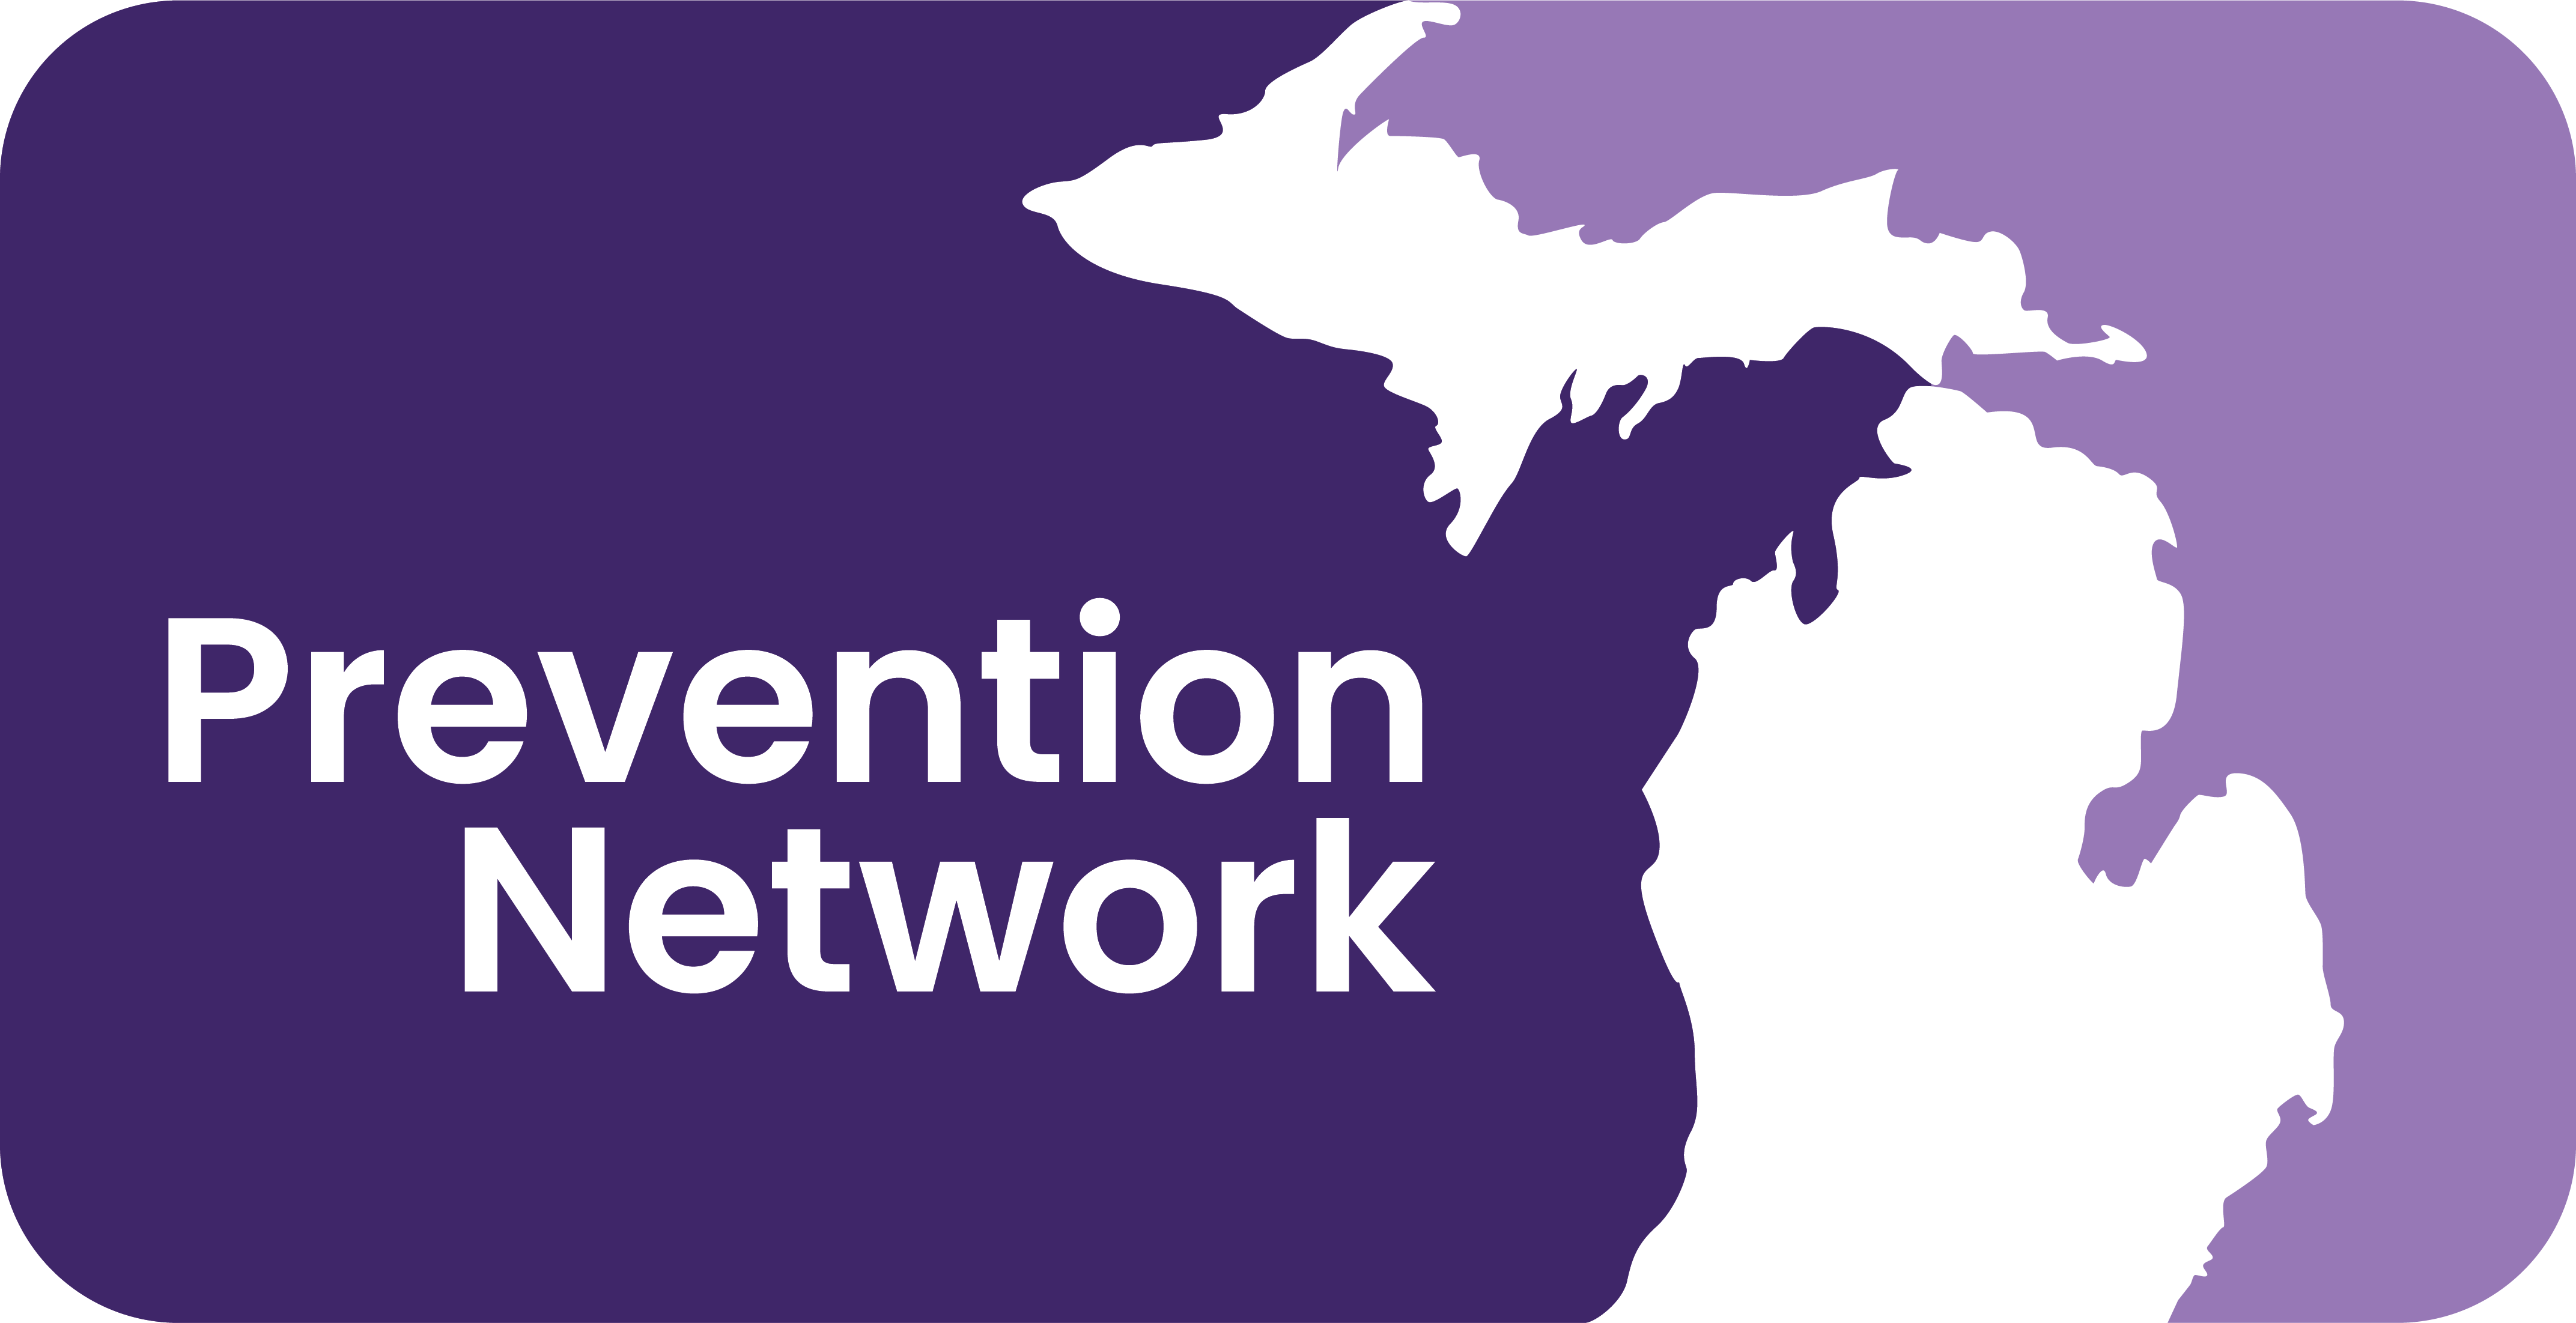 Prevention Network logo